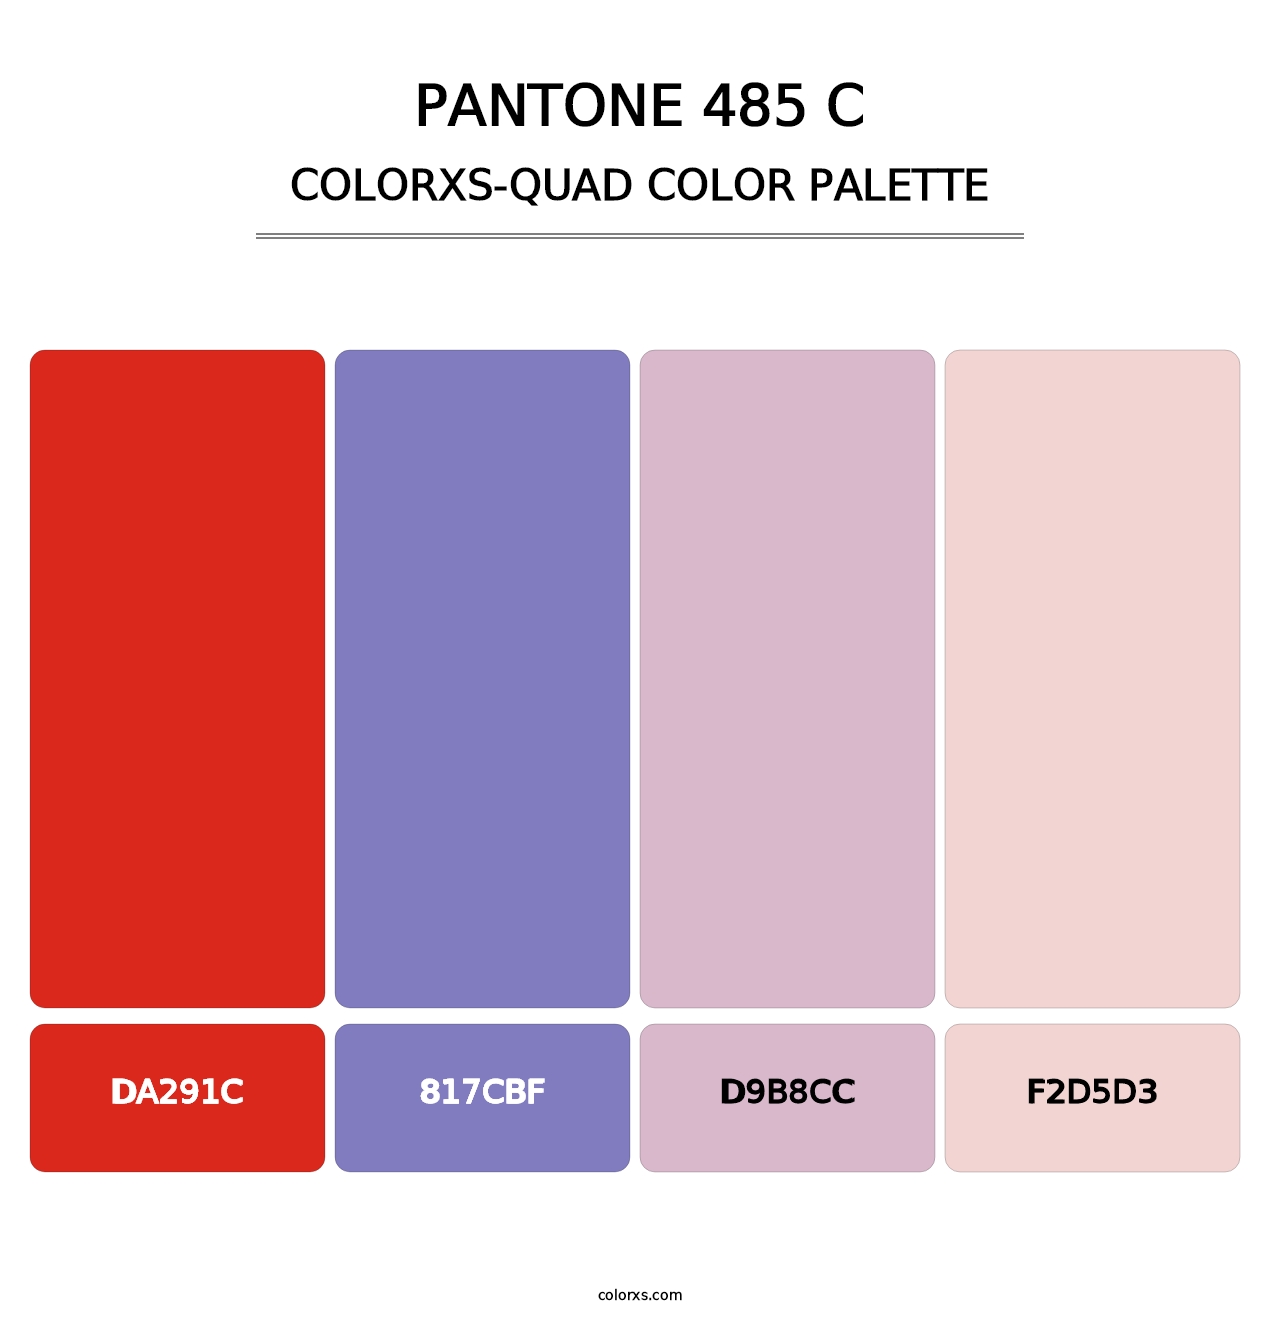 PANTONE 485 C - Colorxs Quad Palette